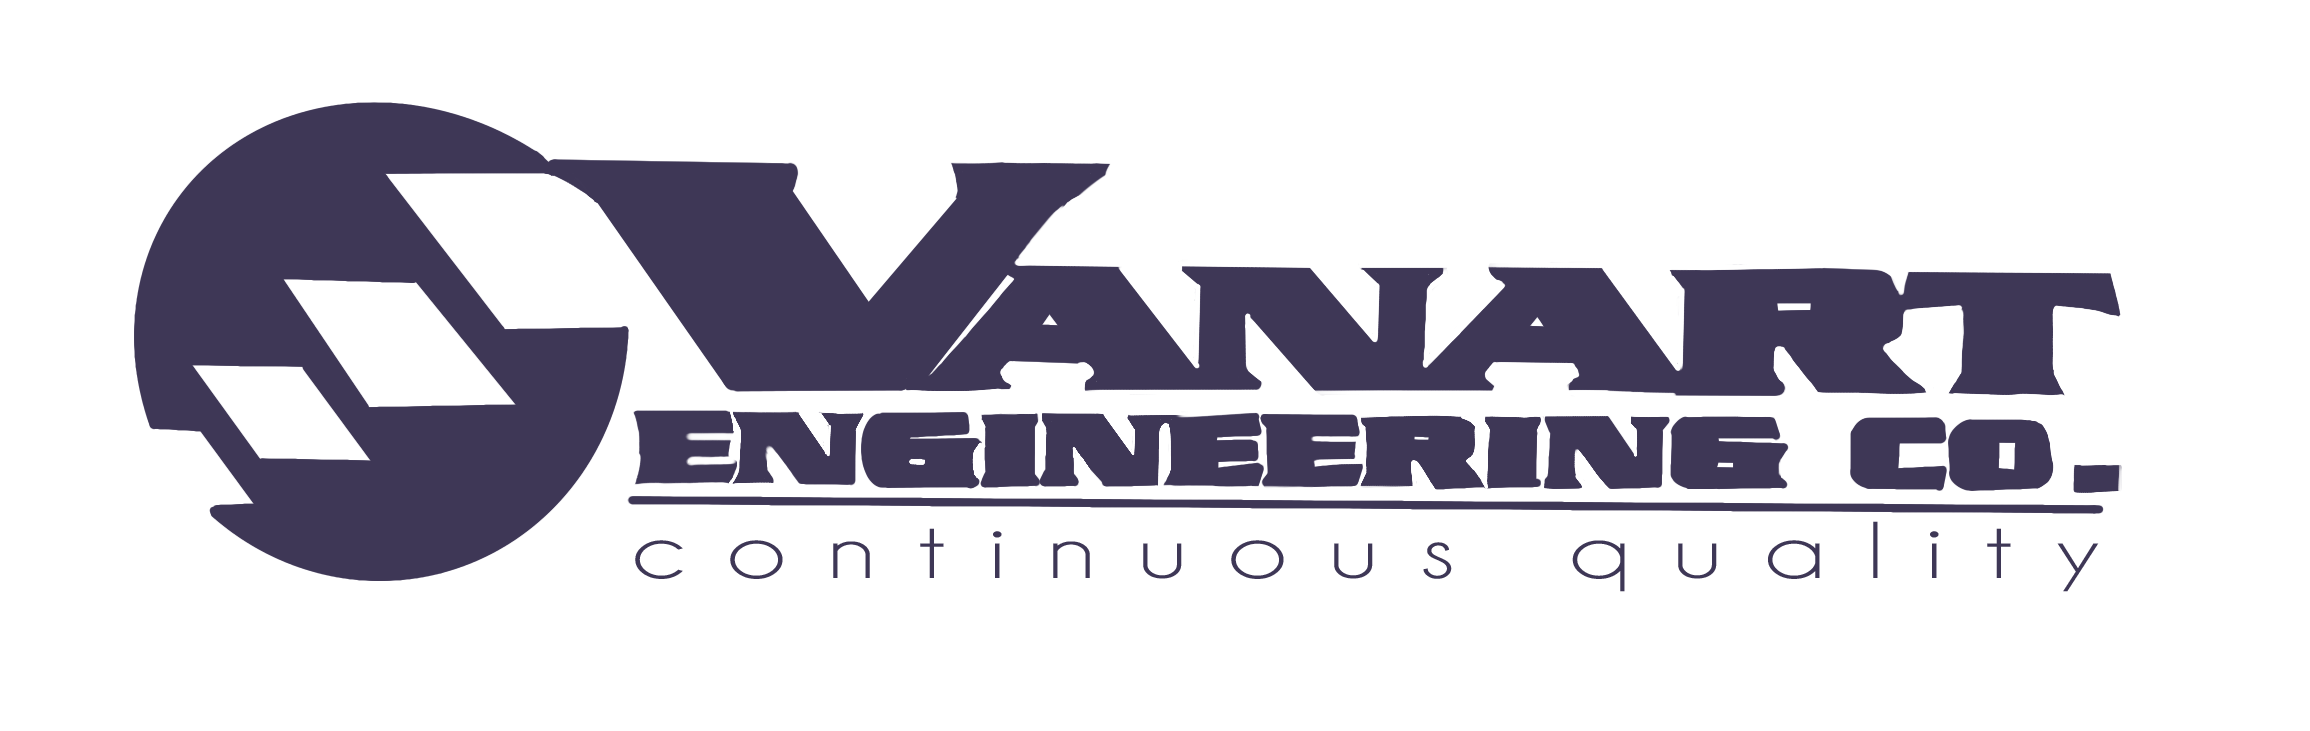 Vanart Engineering Co. 